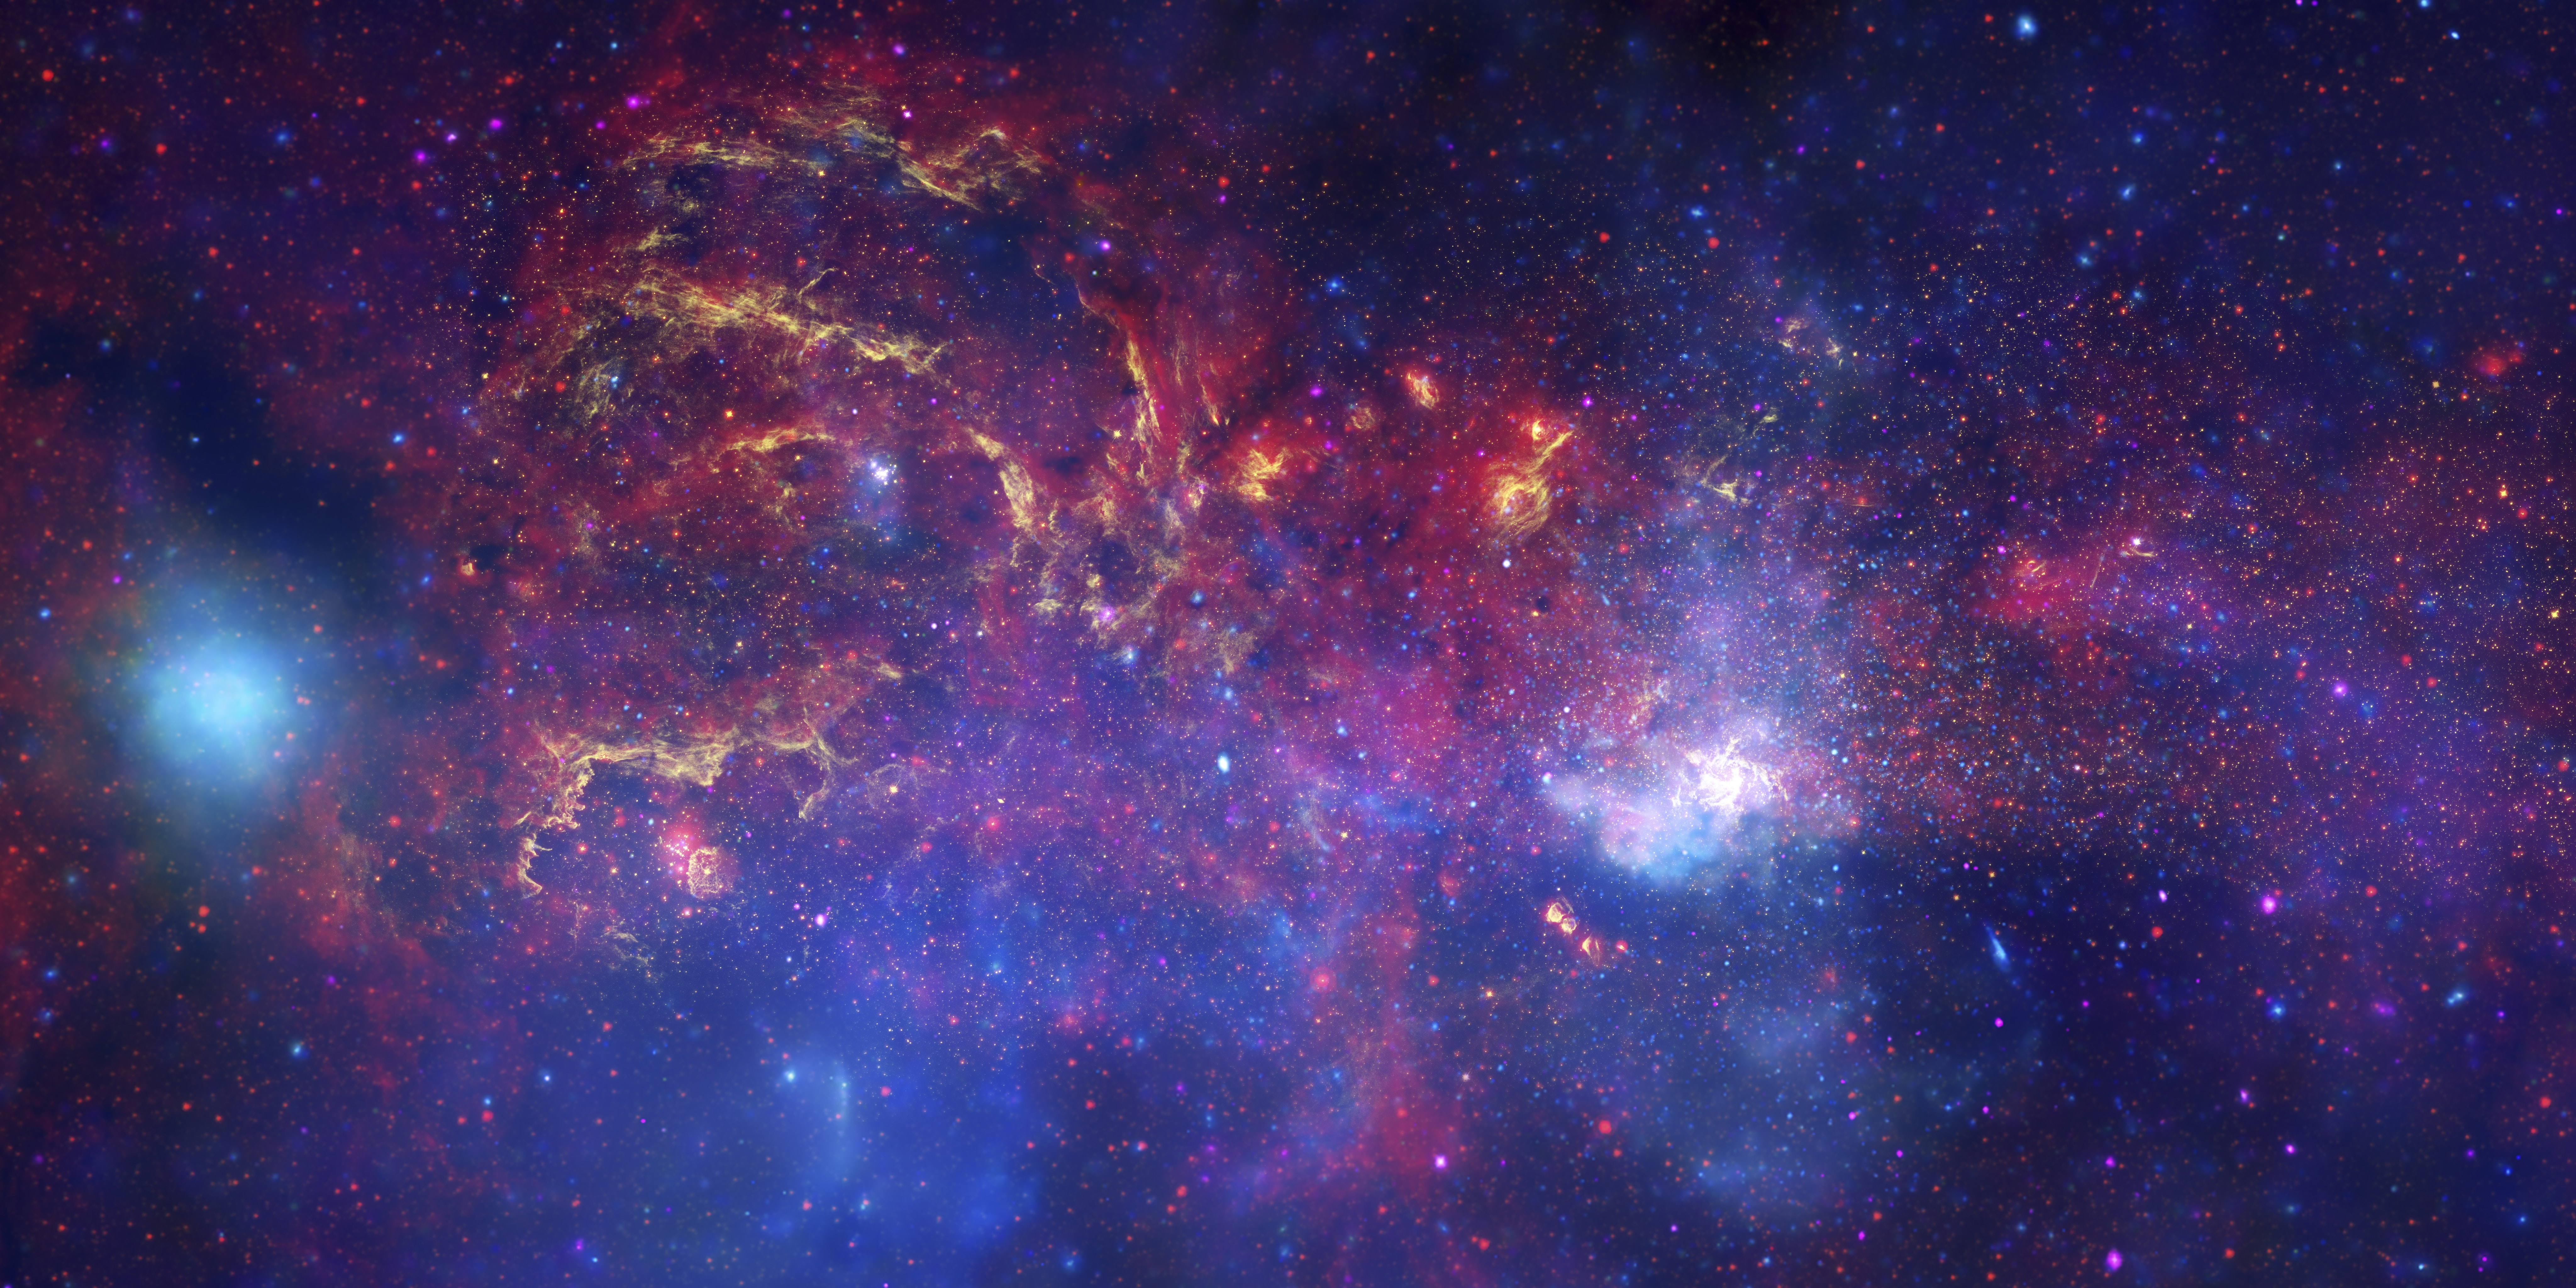 תמונה של אזור צפוף, בולבוס, מלא בגז ובכוכבים בחלל.